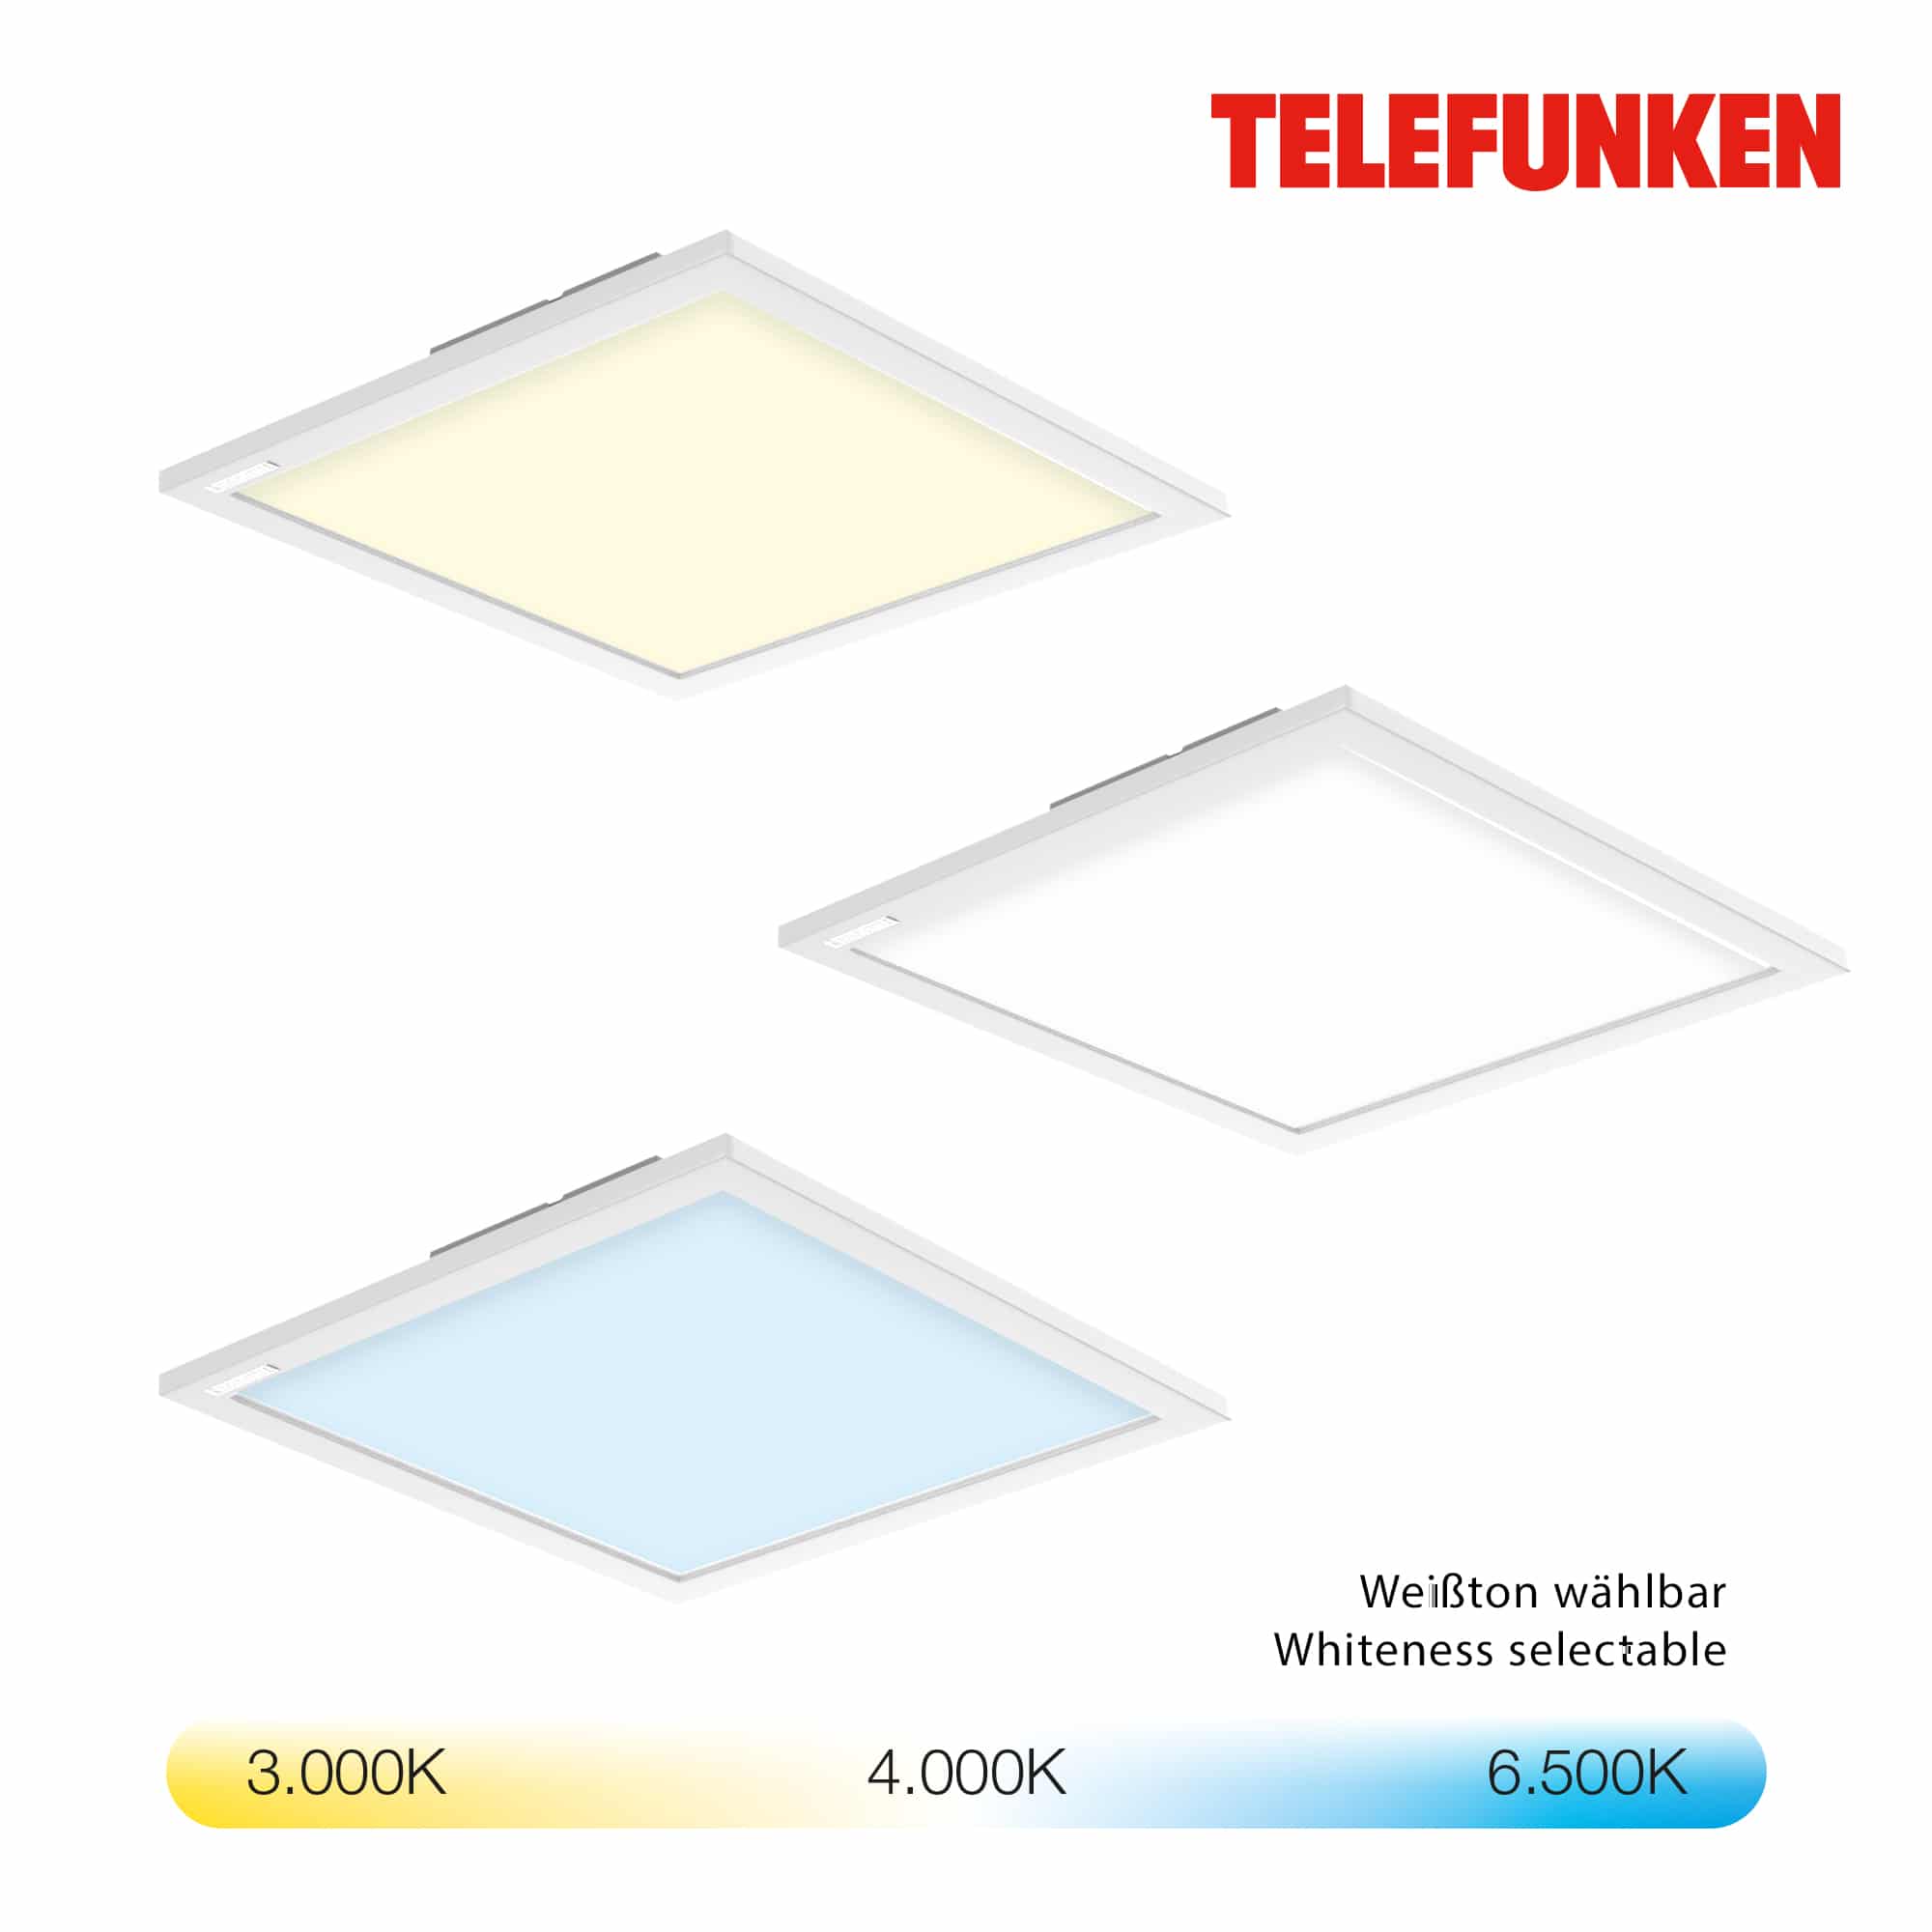 TELEFUNKEN Smart LED Panel, 29,5 cm, 18 W, Weiß